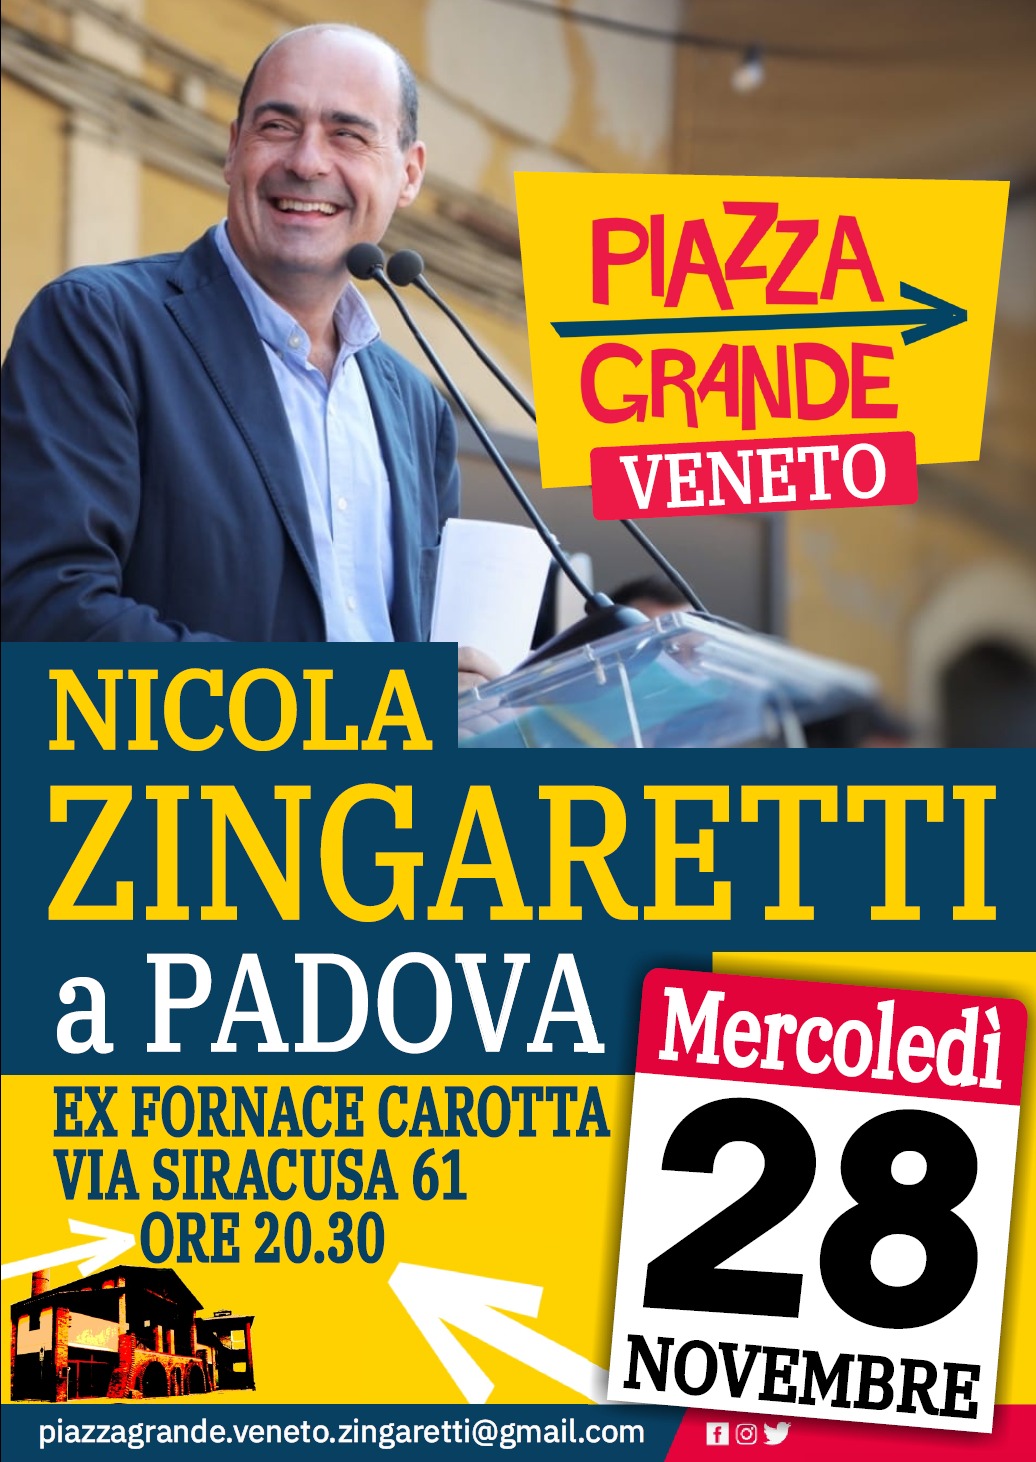 Al momento stai visualizzando Zingaretti Nicola a Padova